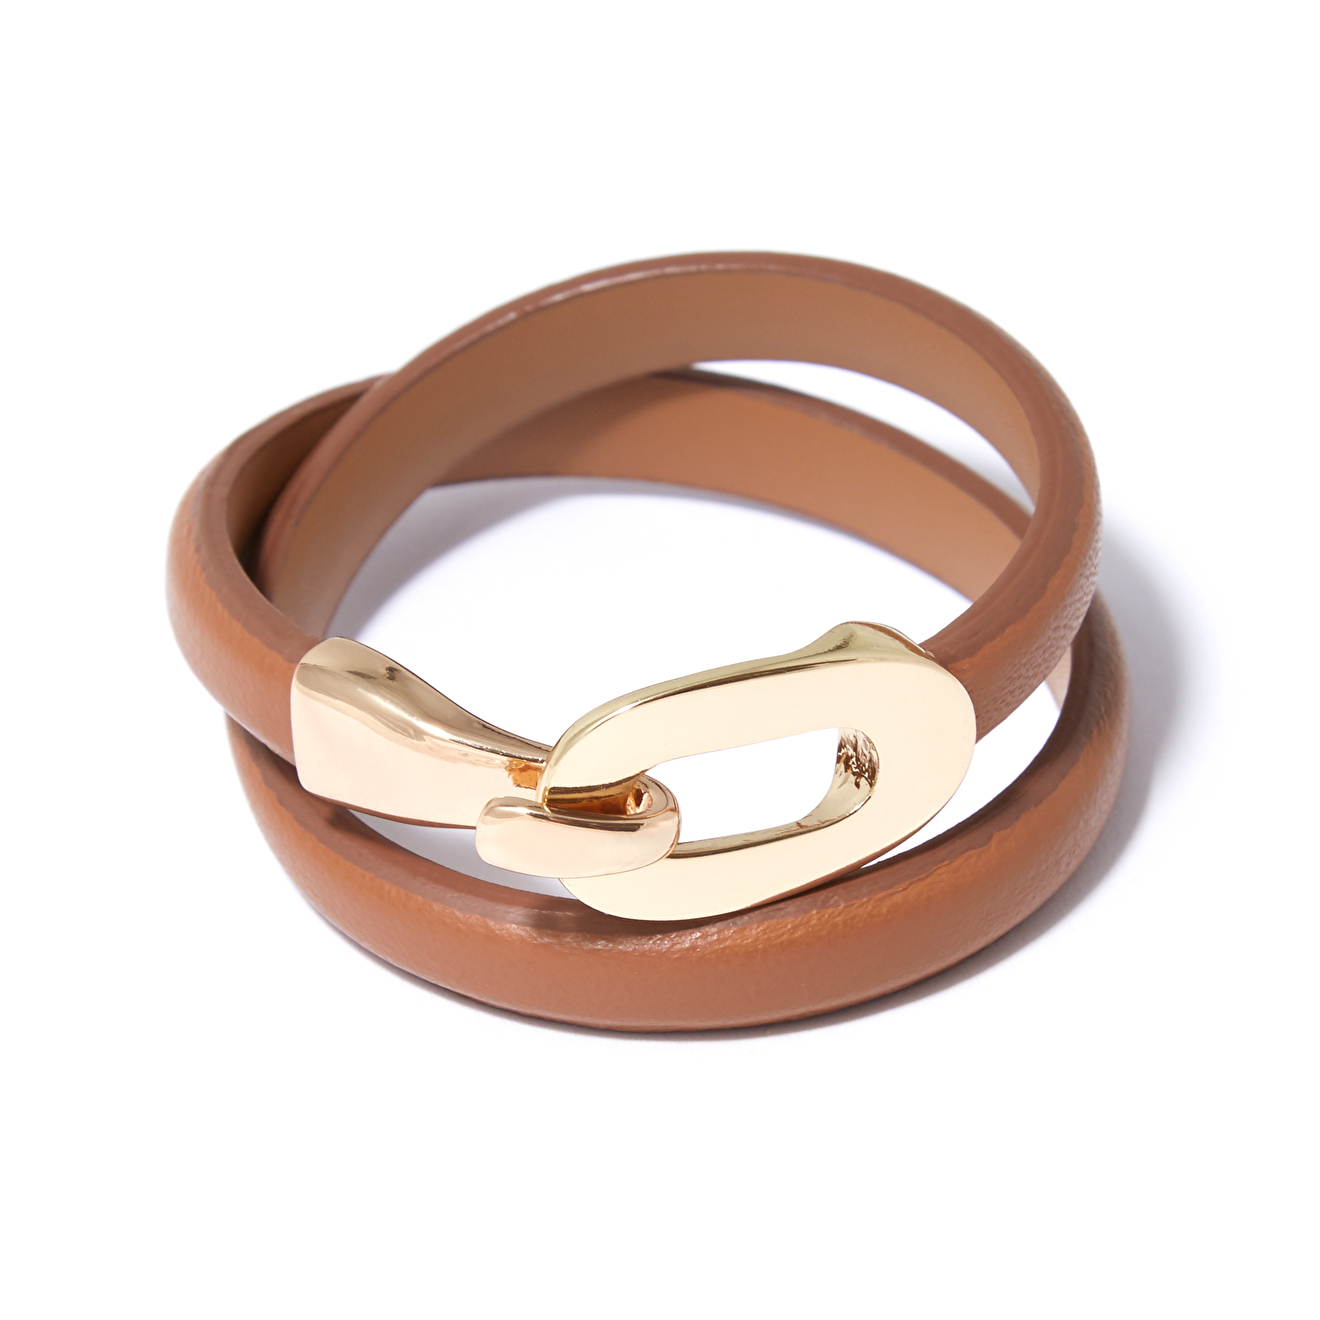 Tannum Коричневый кожаный браслет с пряжкой tannum коричневый кожаный браслет с золотистым квадратом